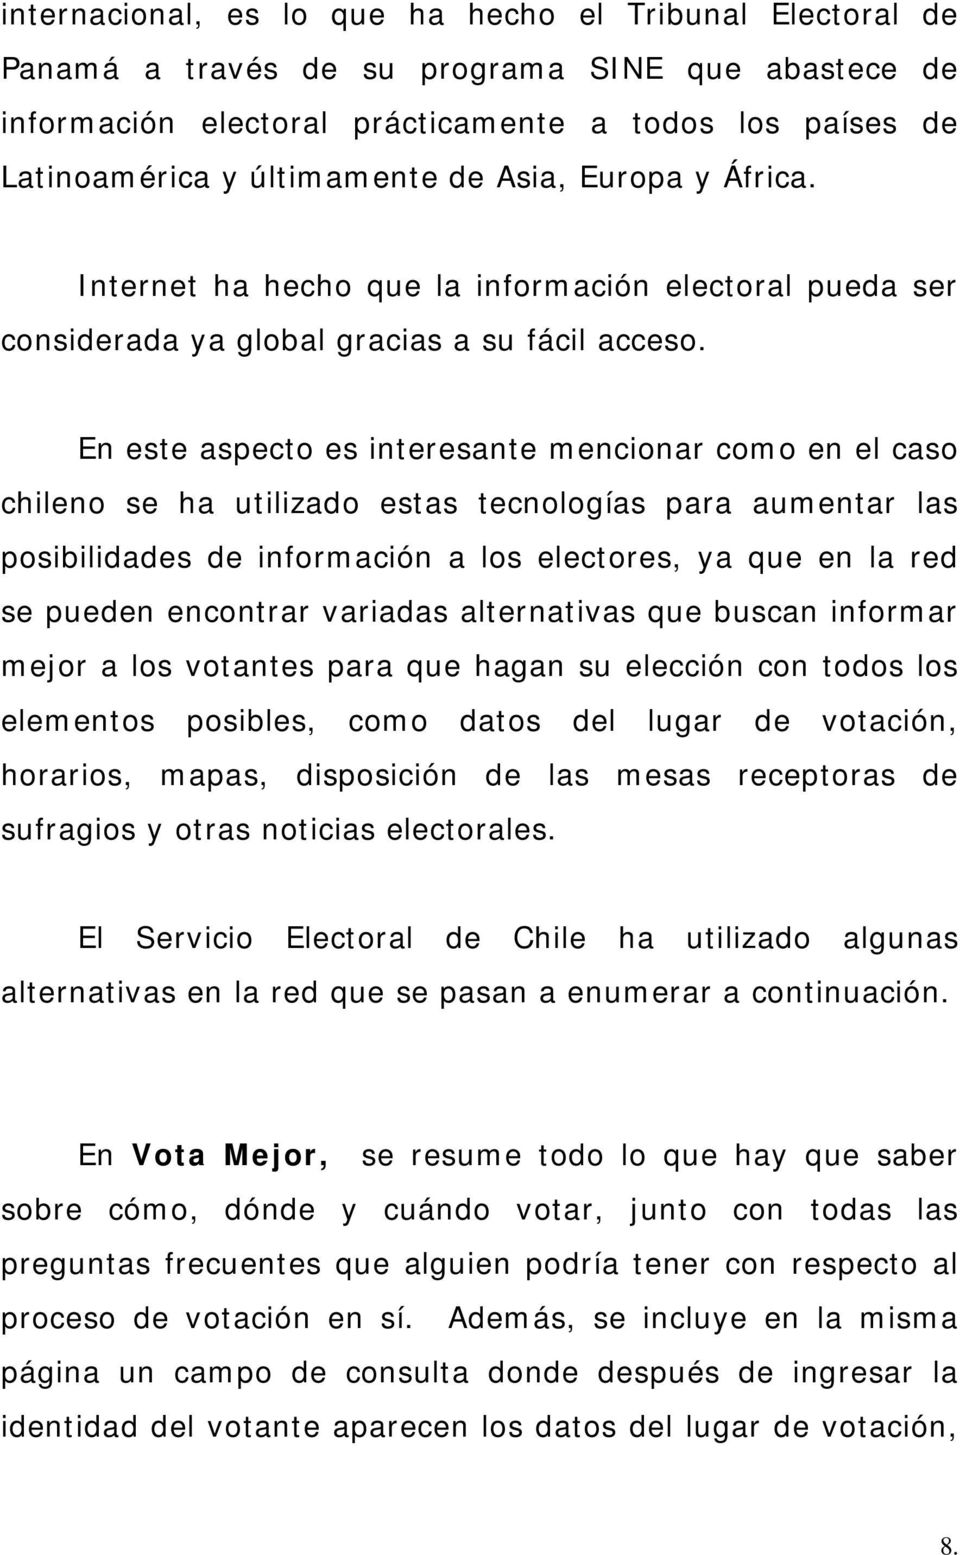 En este aspecto es interesante mencionar como en el caso chileno se ha utilizado estas tecnologías para aumentar las posibilidades de información a los electores, ya que en la red se pueden encontrar